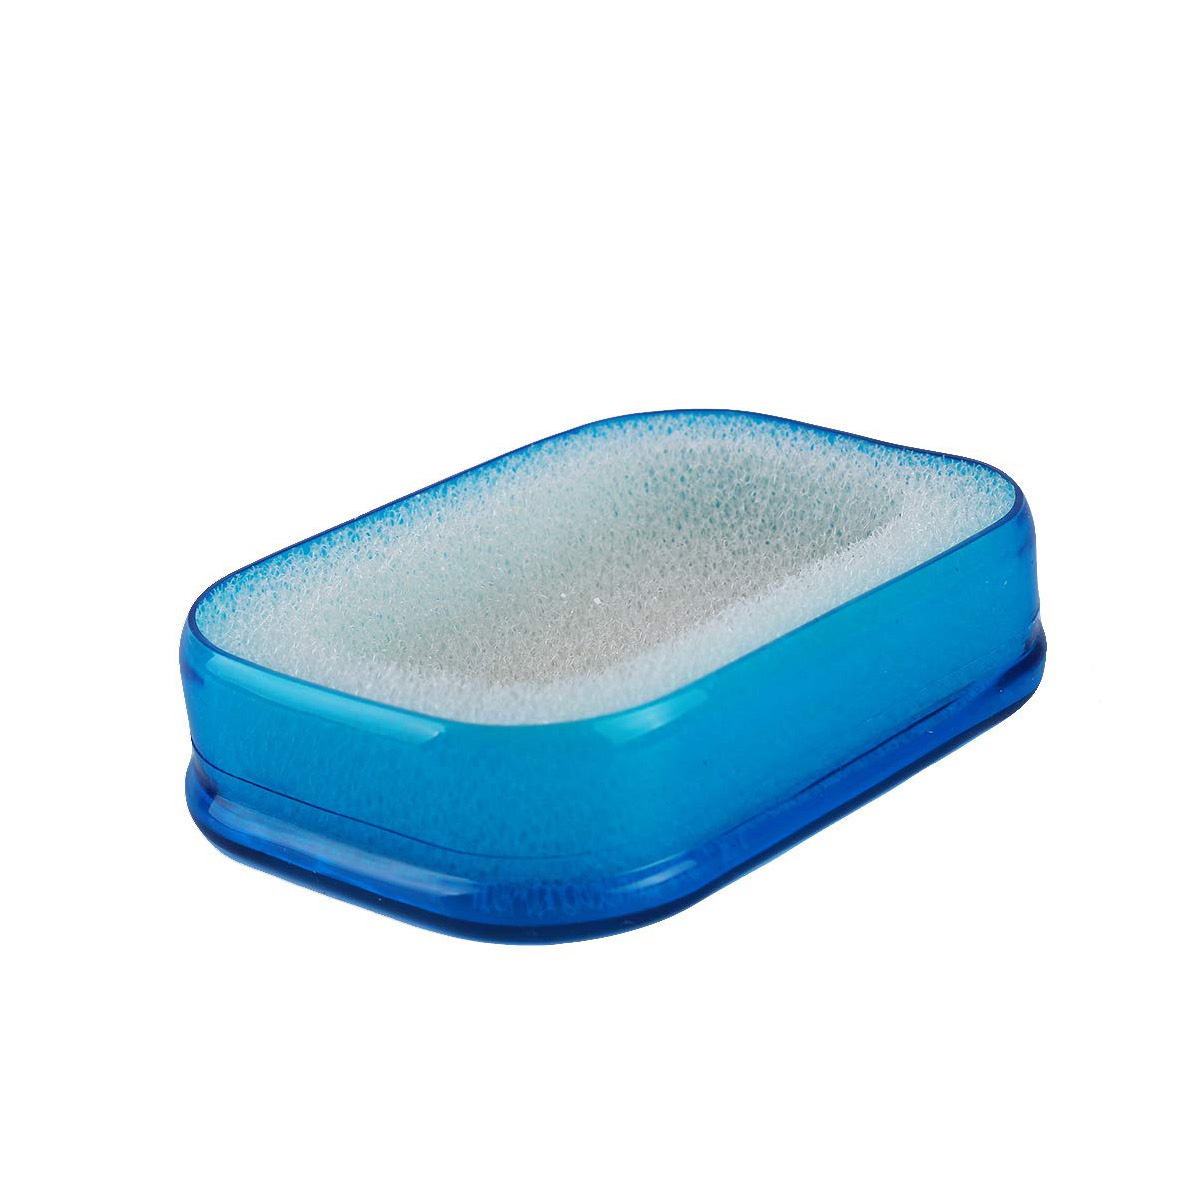 фото Мультифункциональная губка мыльница в пластиковой коробке, синий, blonder home bh-ash-03